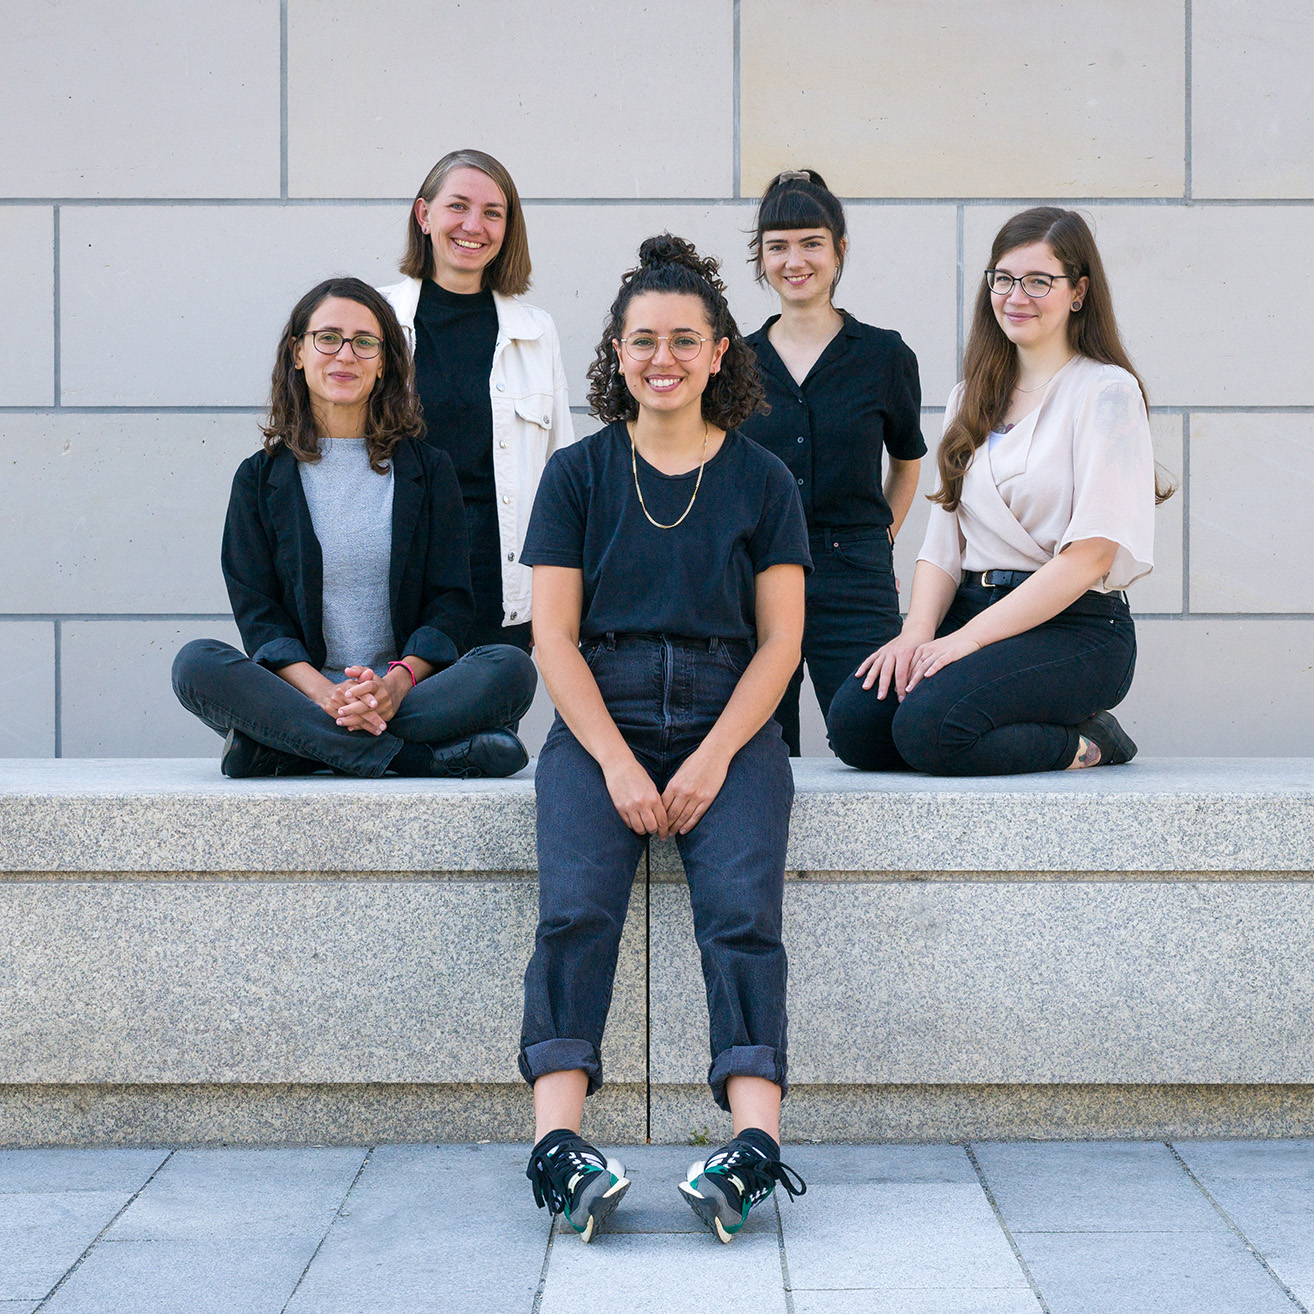 Die fünf Mitarbeiterinnen des Projekts ostklick sitzen und stehen auf einer Steinbank für ein Teamfoto.